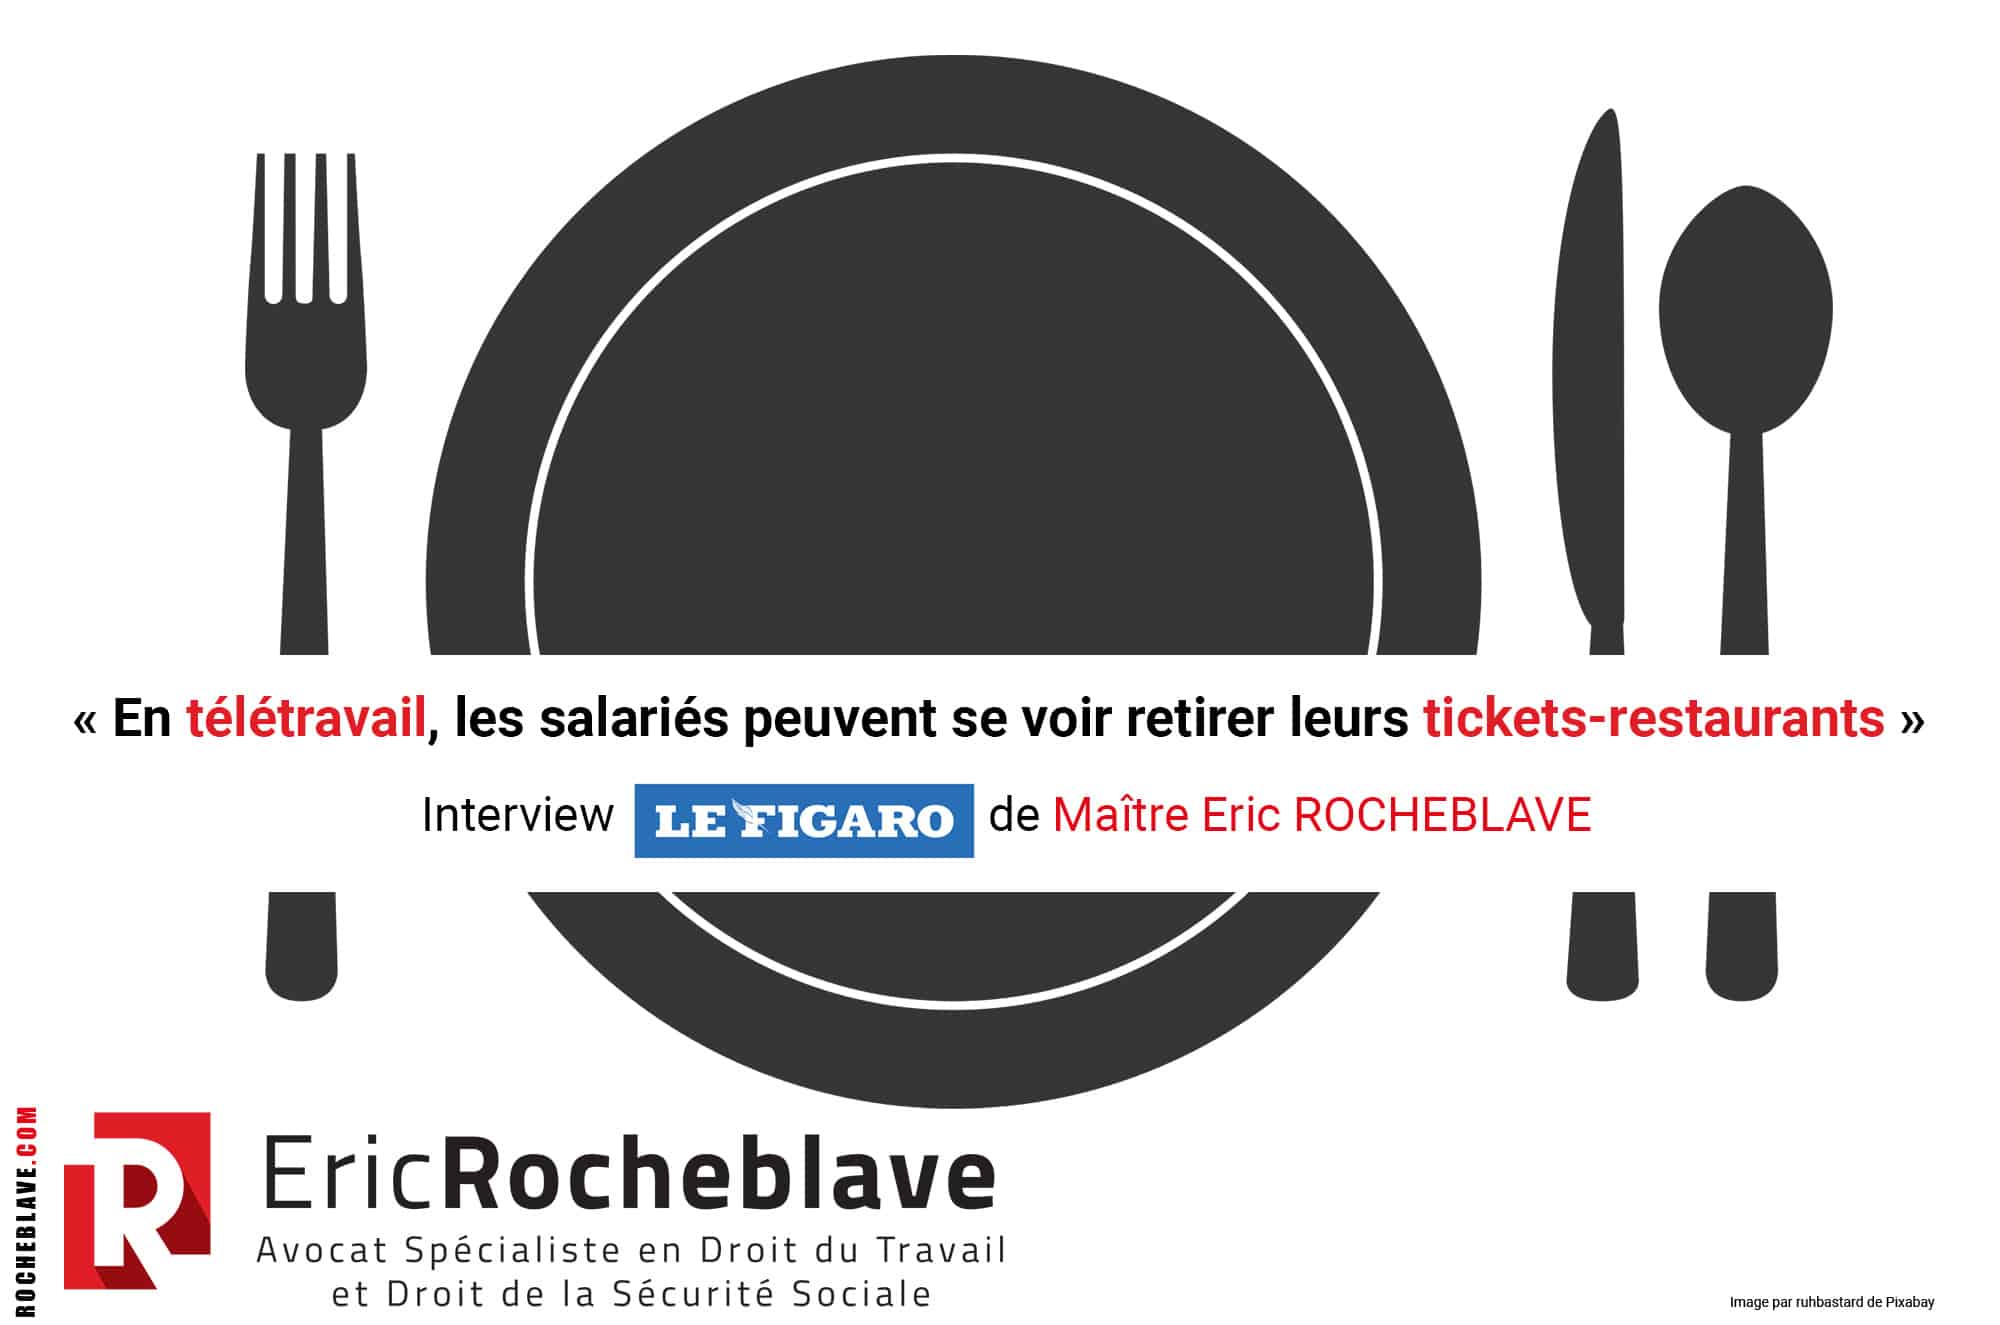 « En télétravail, les salariés peuvent se voir retirer leurs tickets-restaurants » Interview Le Figaro de Maître Eric ROCHEBLAVE